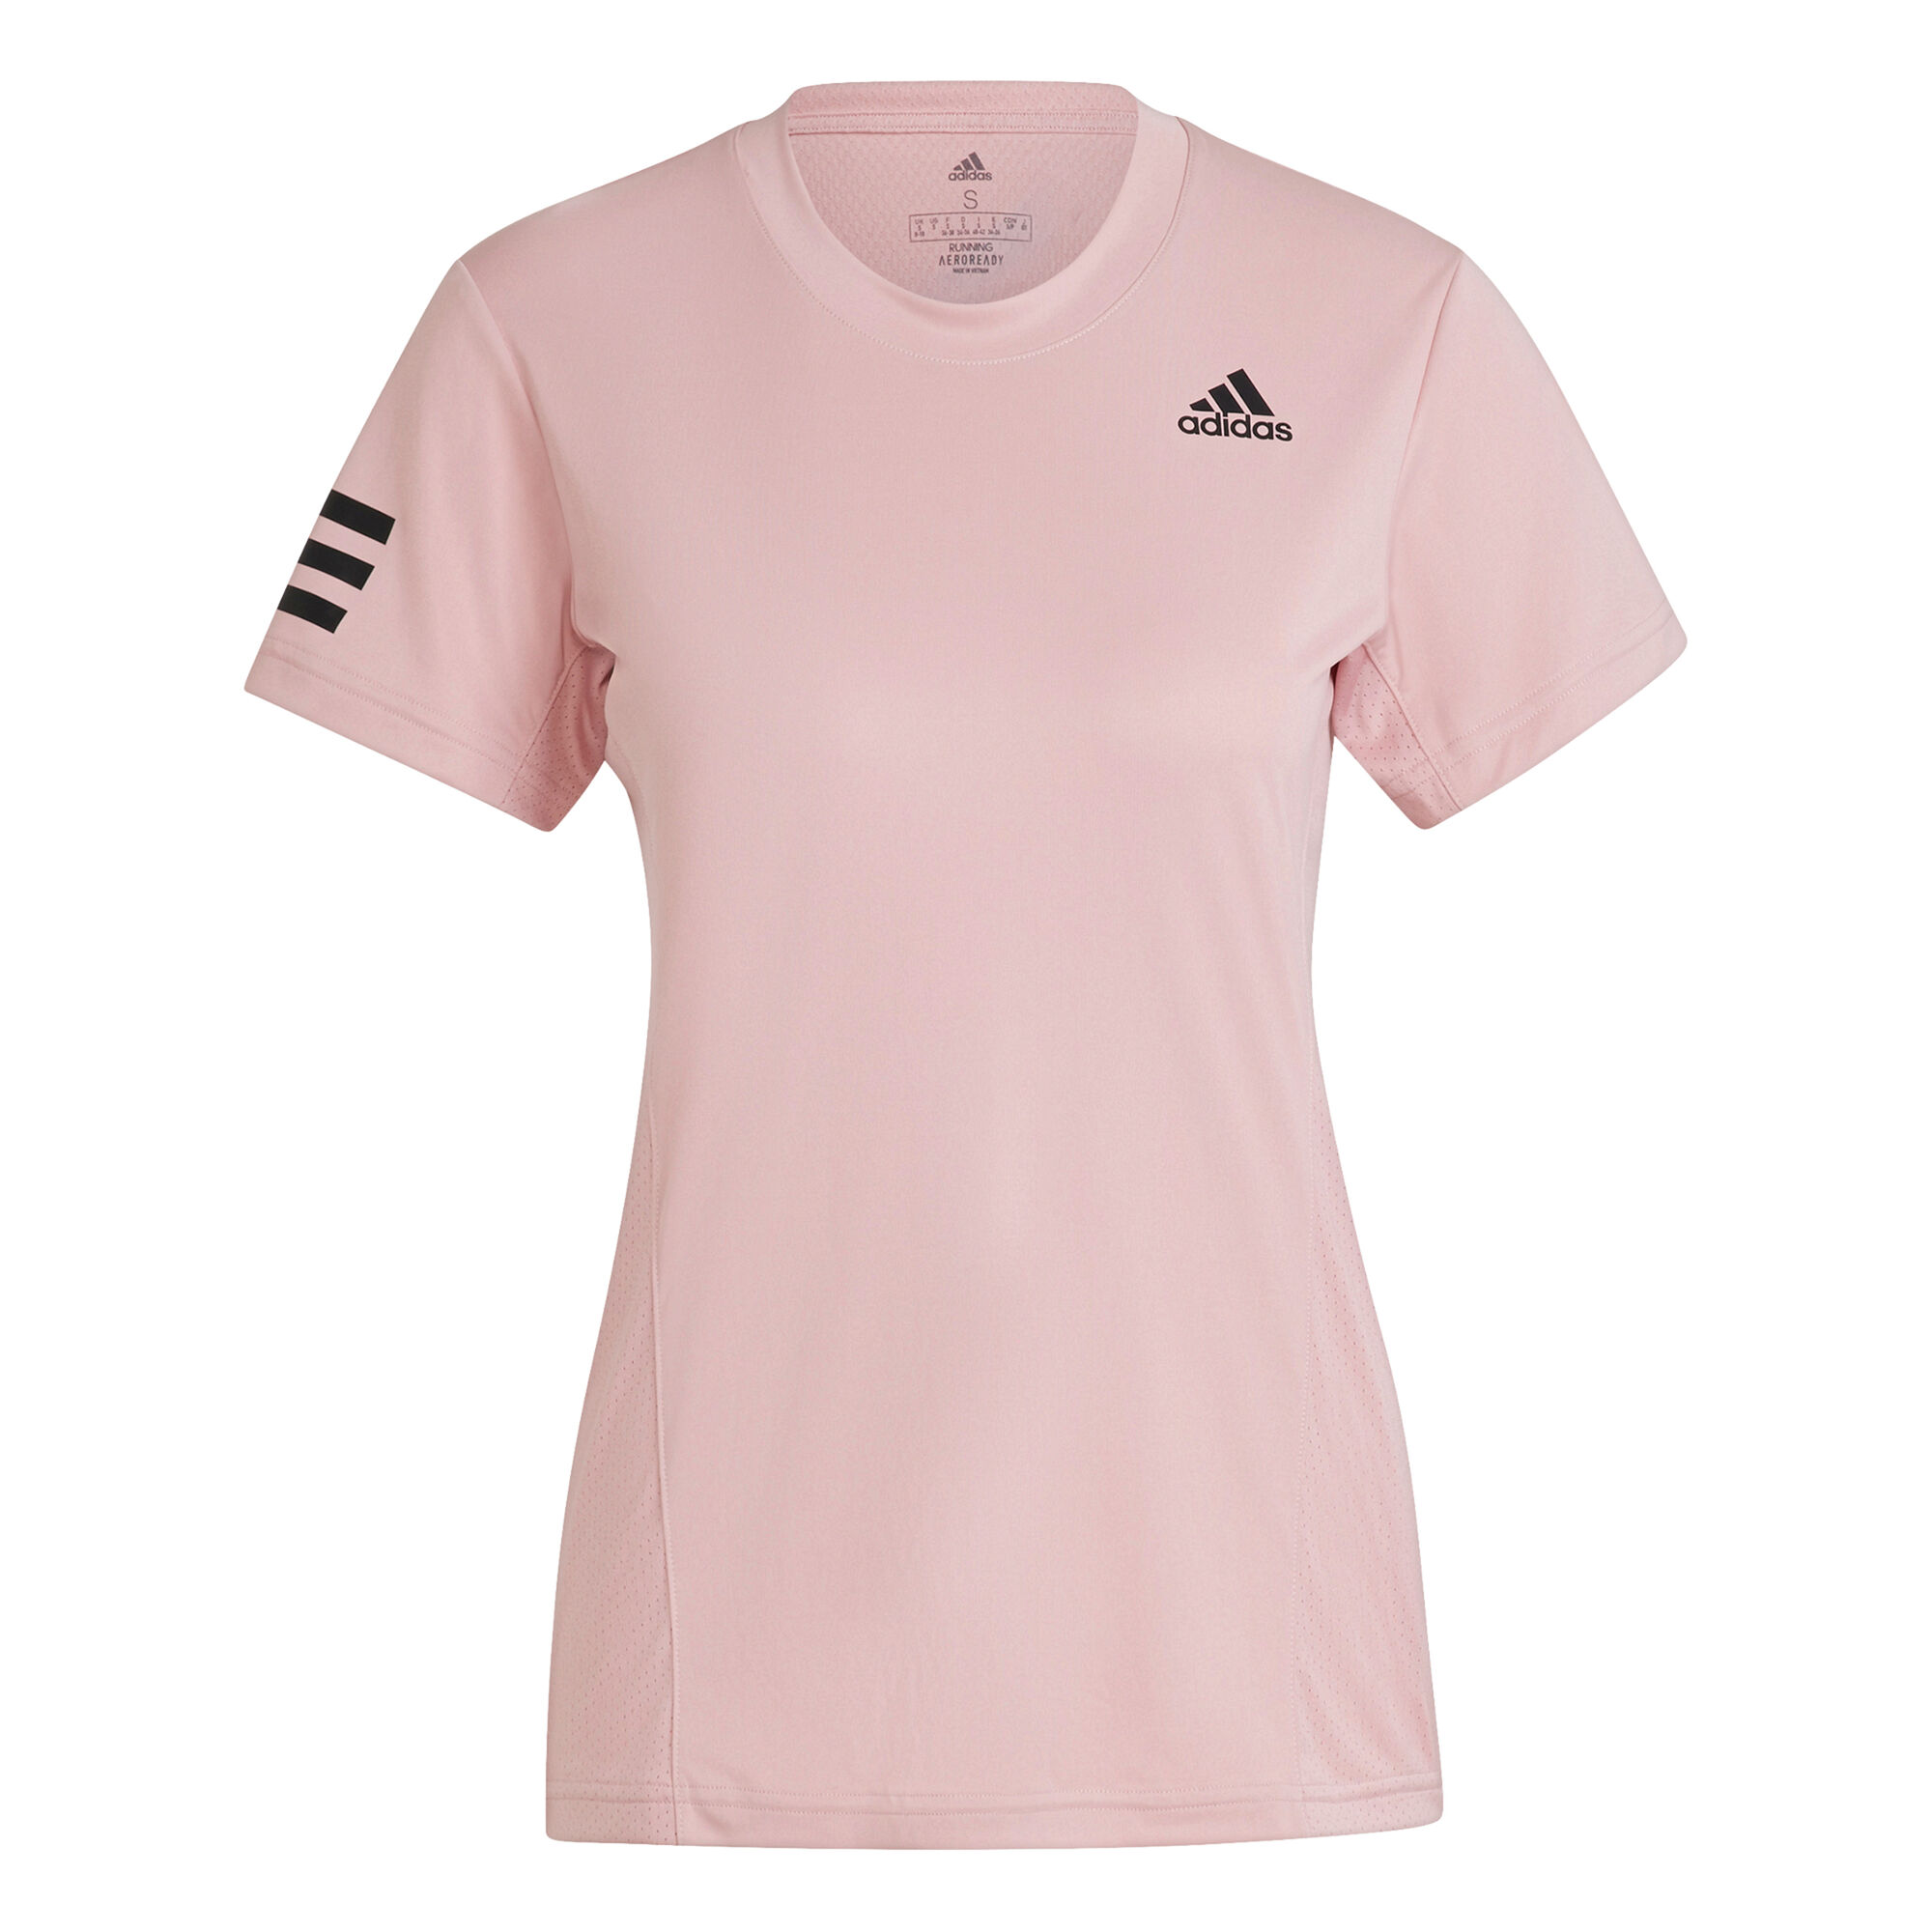 adidas T-shirt Dames - Roze online kopen | Tennis-Point